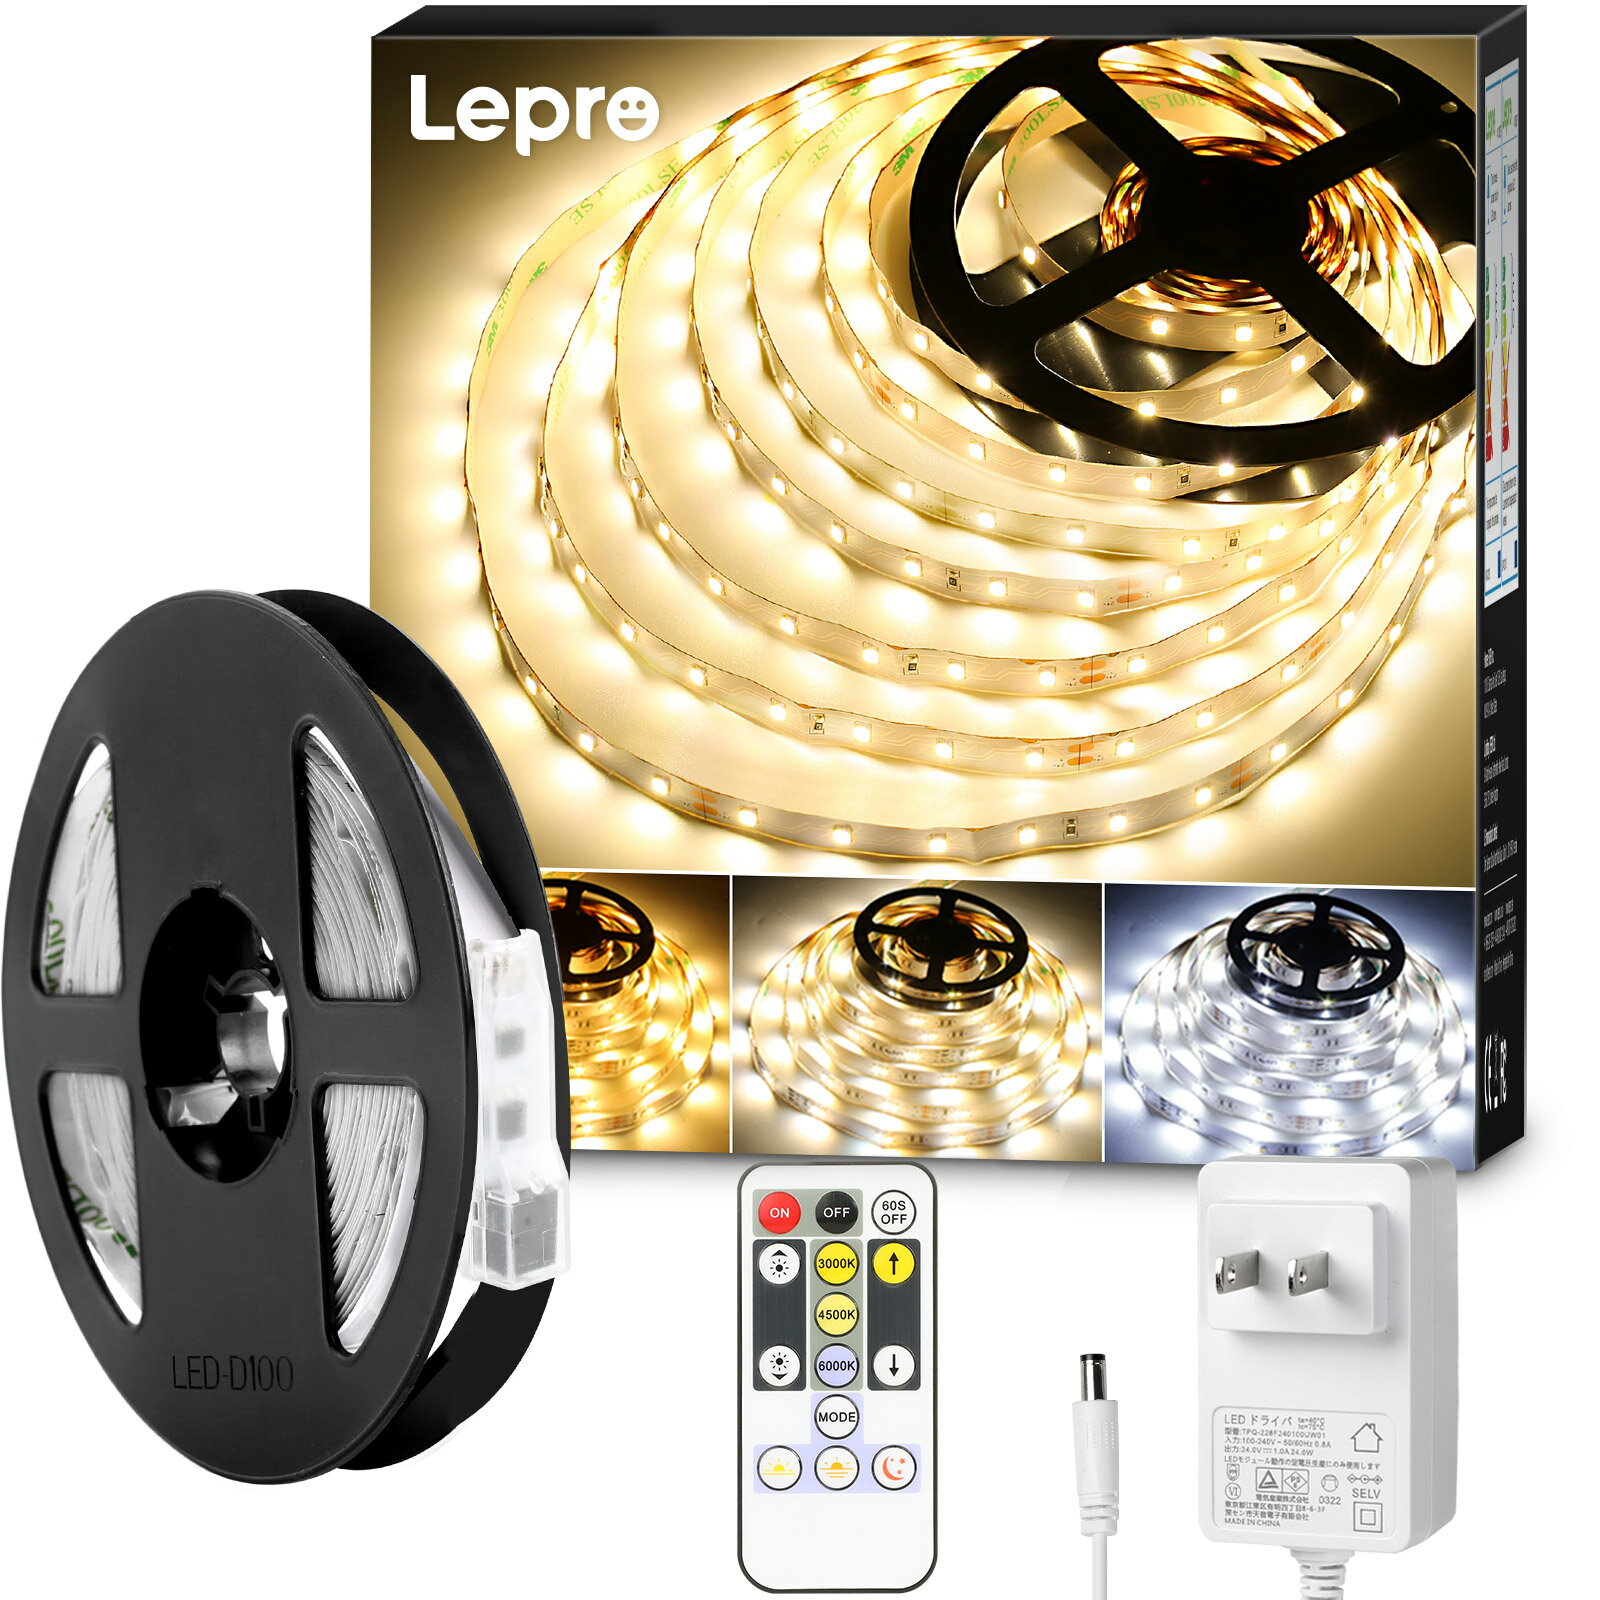 【2年保証】Lepro <strong>ledテープライト</strong> ledテープ 10メートル <strong>リモコン</strong>付き 調光調色 カット可能 取付簡単 イルミネーションライト 3ピン 2835SMD 店舗 室内 DIY ホーム装飾用